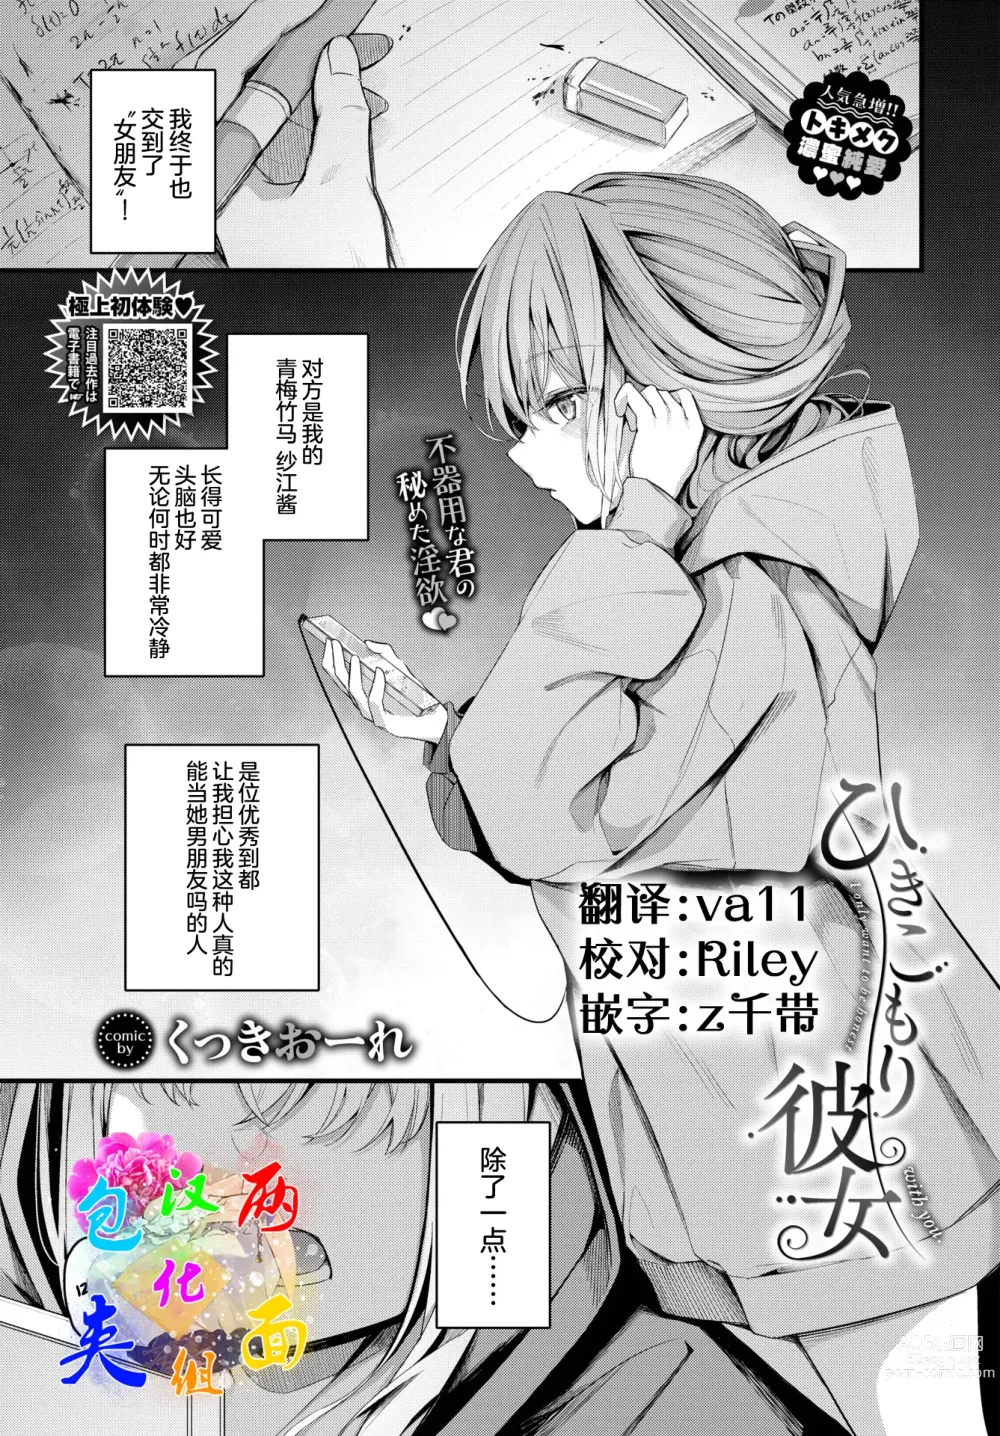 Page 1 of manga Hikikomori Kanojo